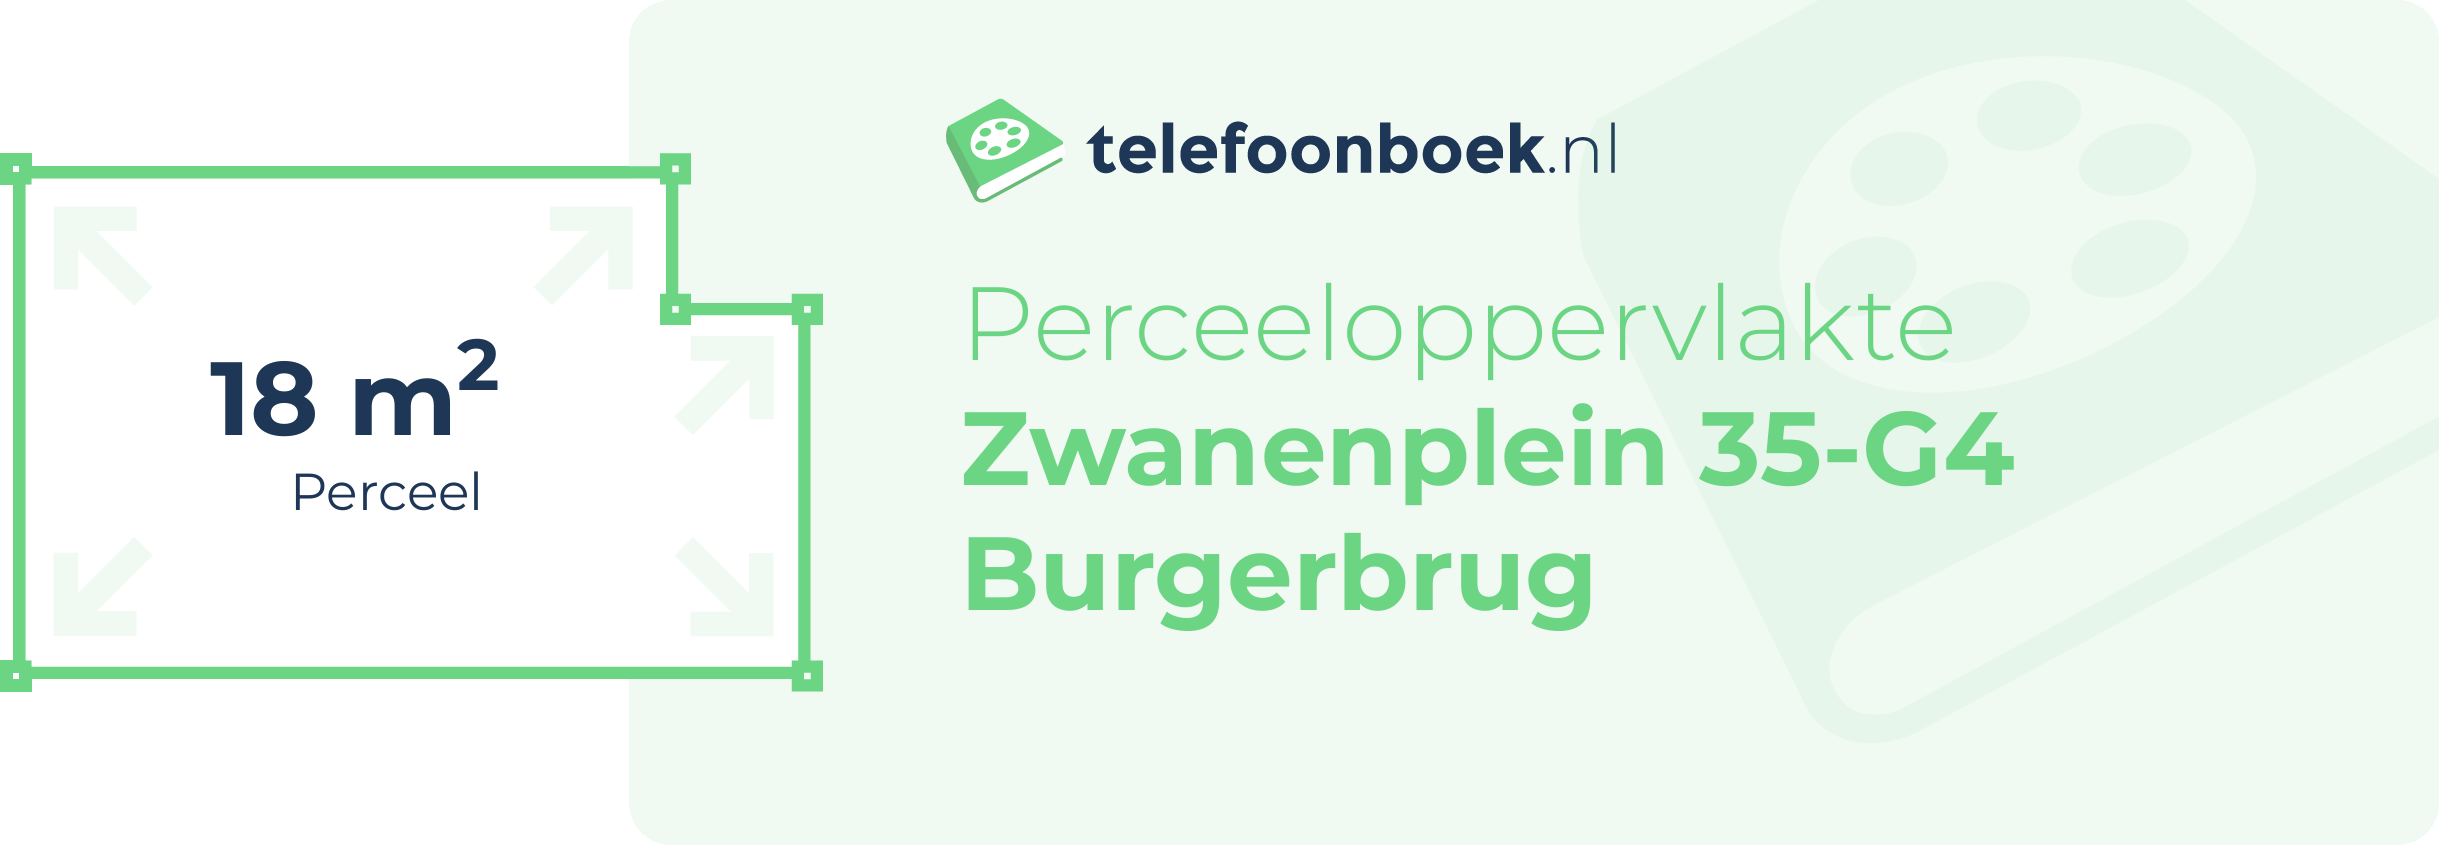 Perceeloppervlakte Zwanenplein 35-G4 Burgerbrug